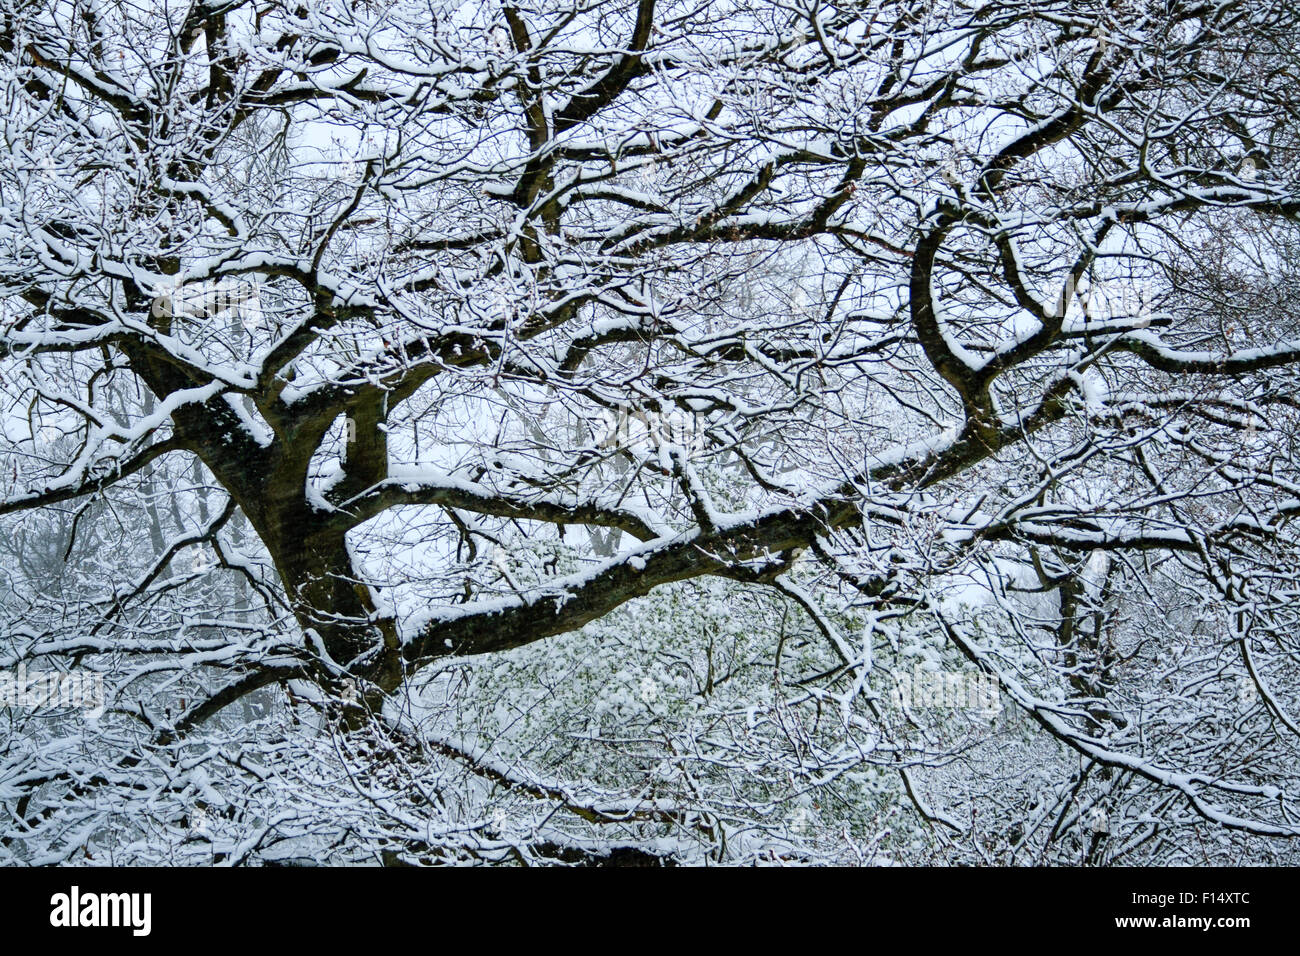 Winter-Szene von Schnee bedeckten Bäume nach starkem Schneefall im Caterham, Surrey, England. Stockfoto